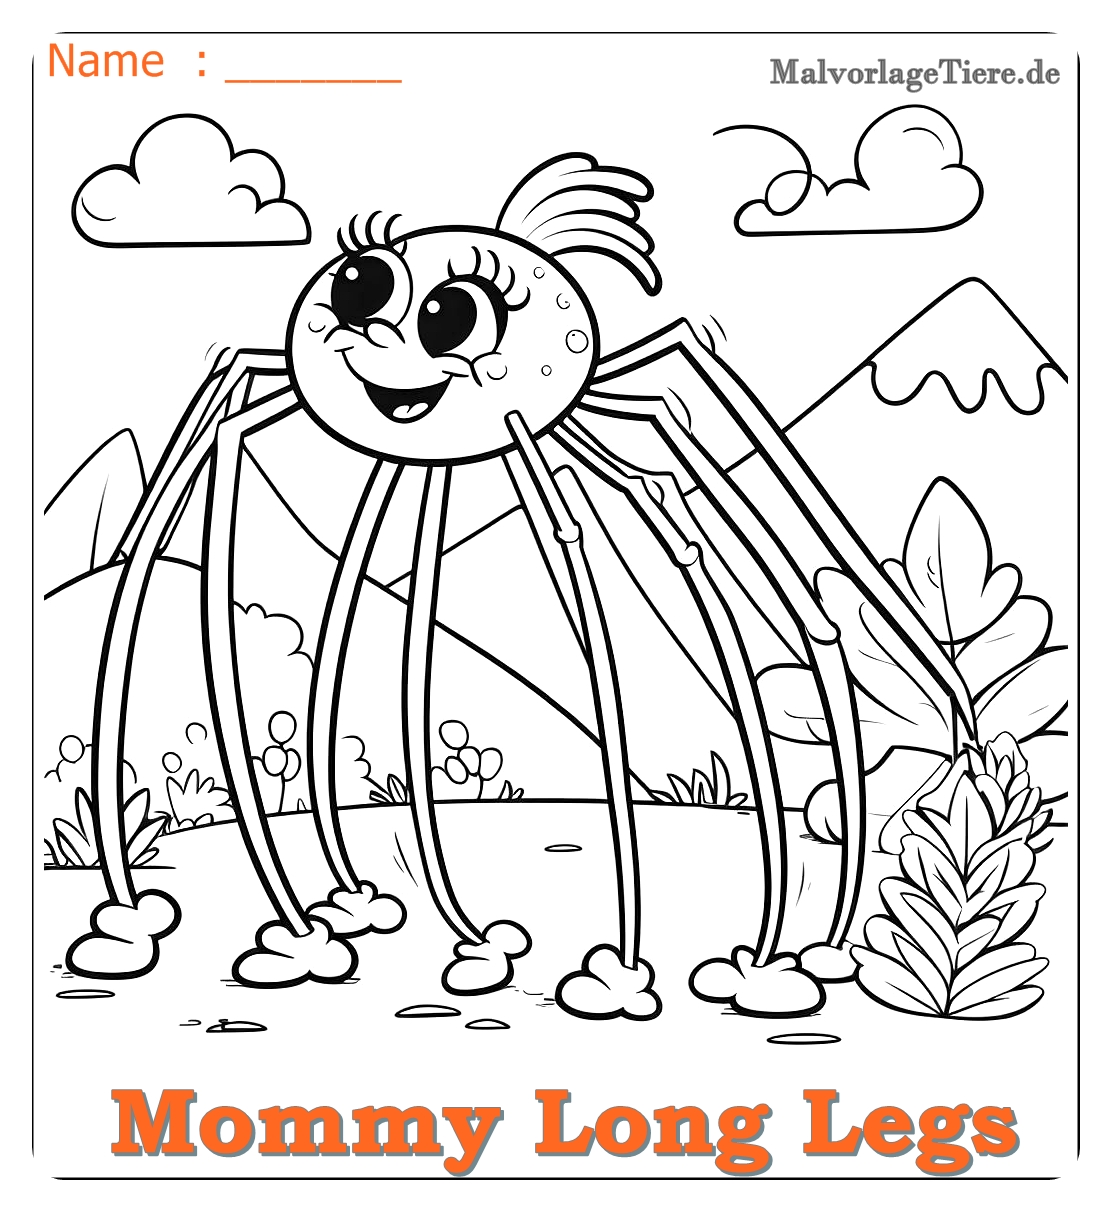 mommy long legs ausmalbilder 06 by malvorlagetiere.de